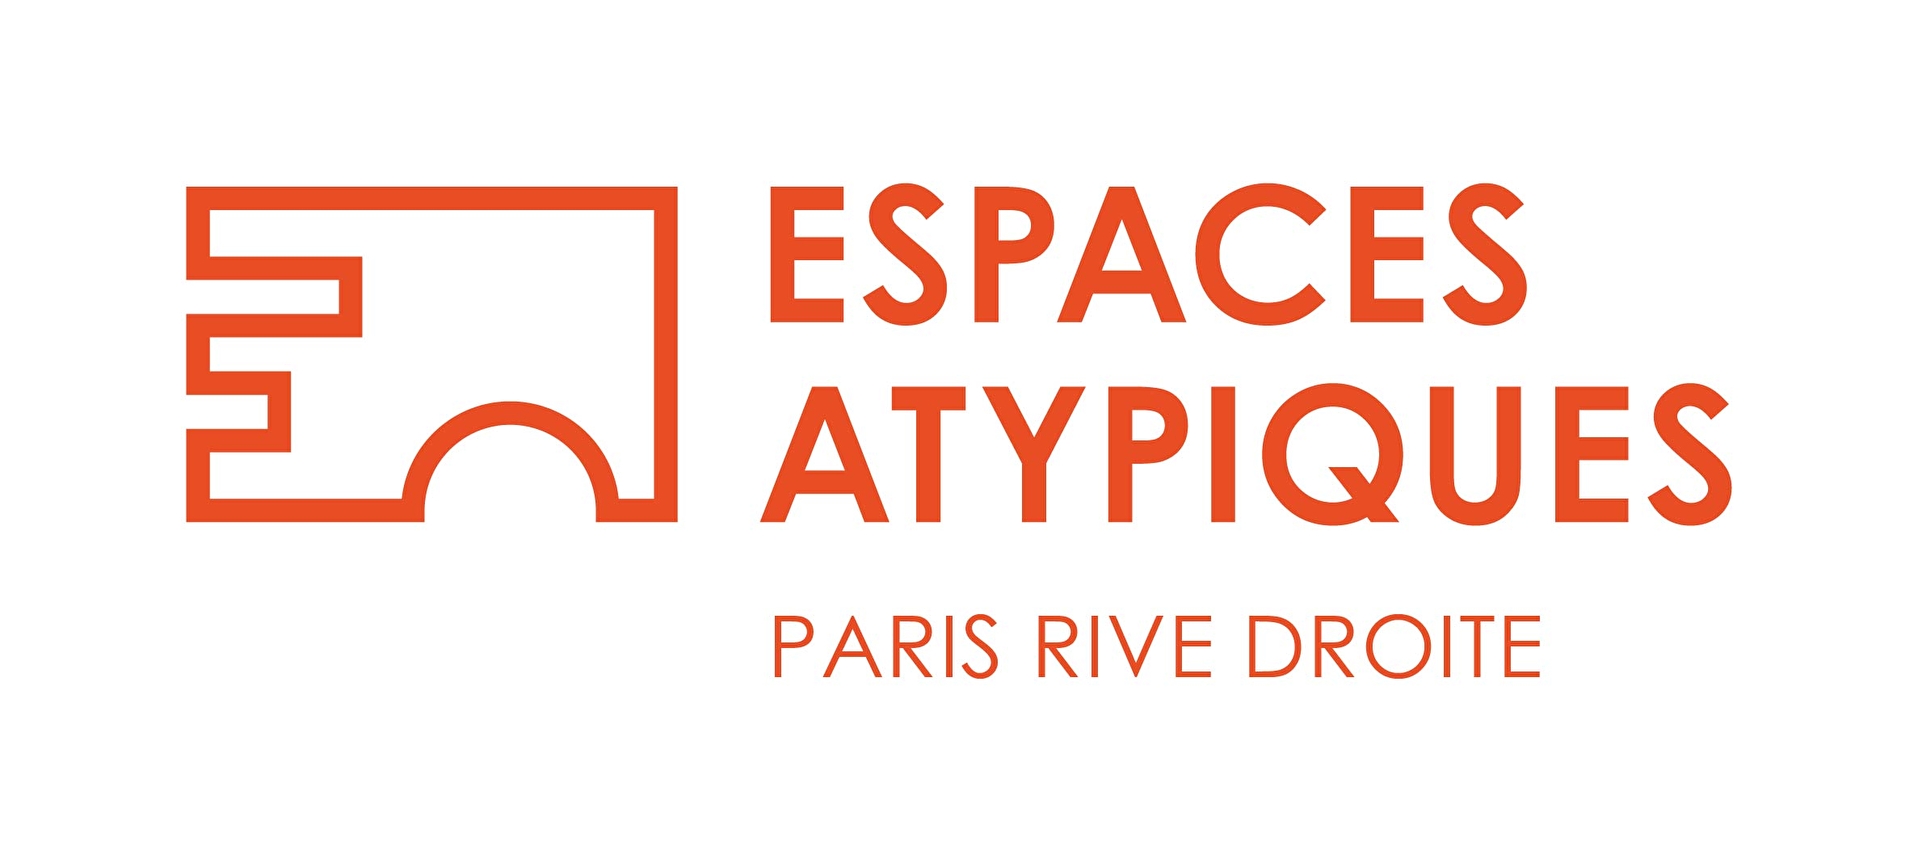 ESPACES ATYPIQUES Paris - ESPACES ATYPIQUES Paris - Rive Droite